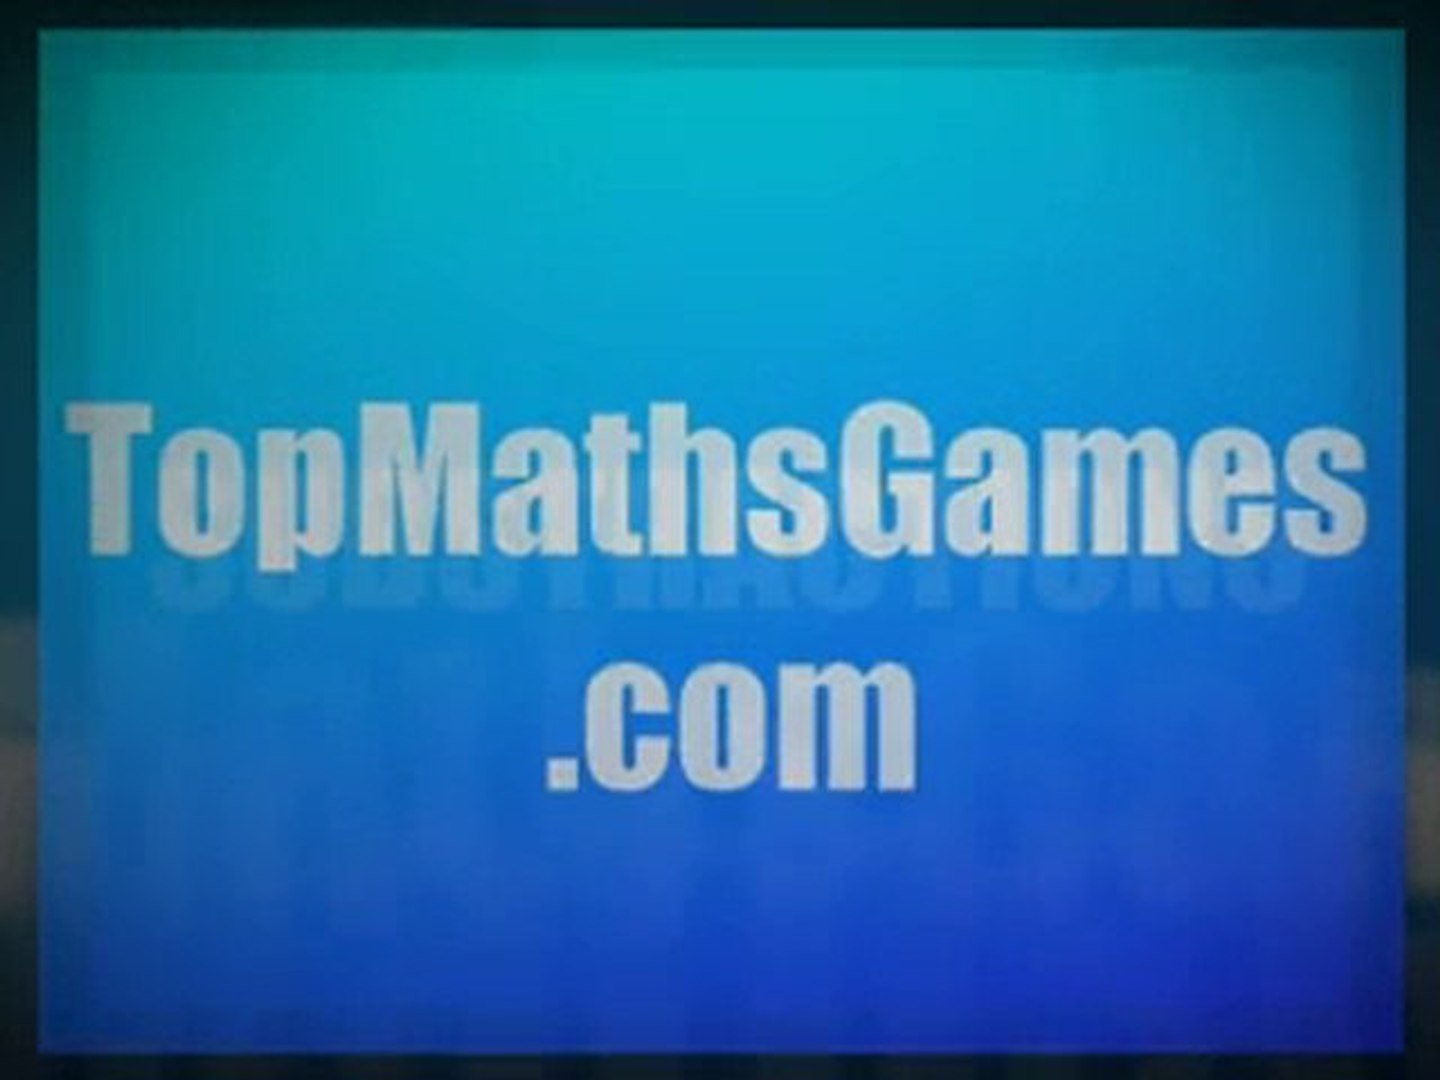 Fun maths games